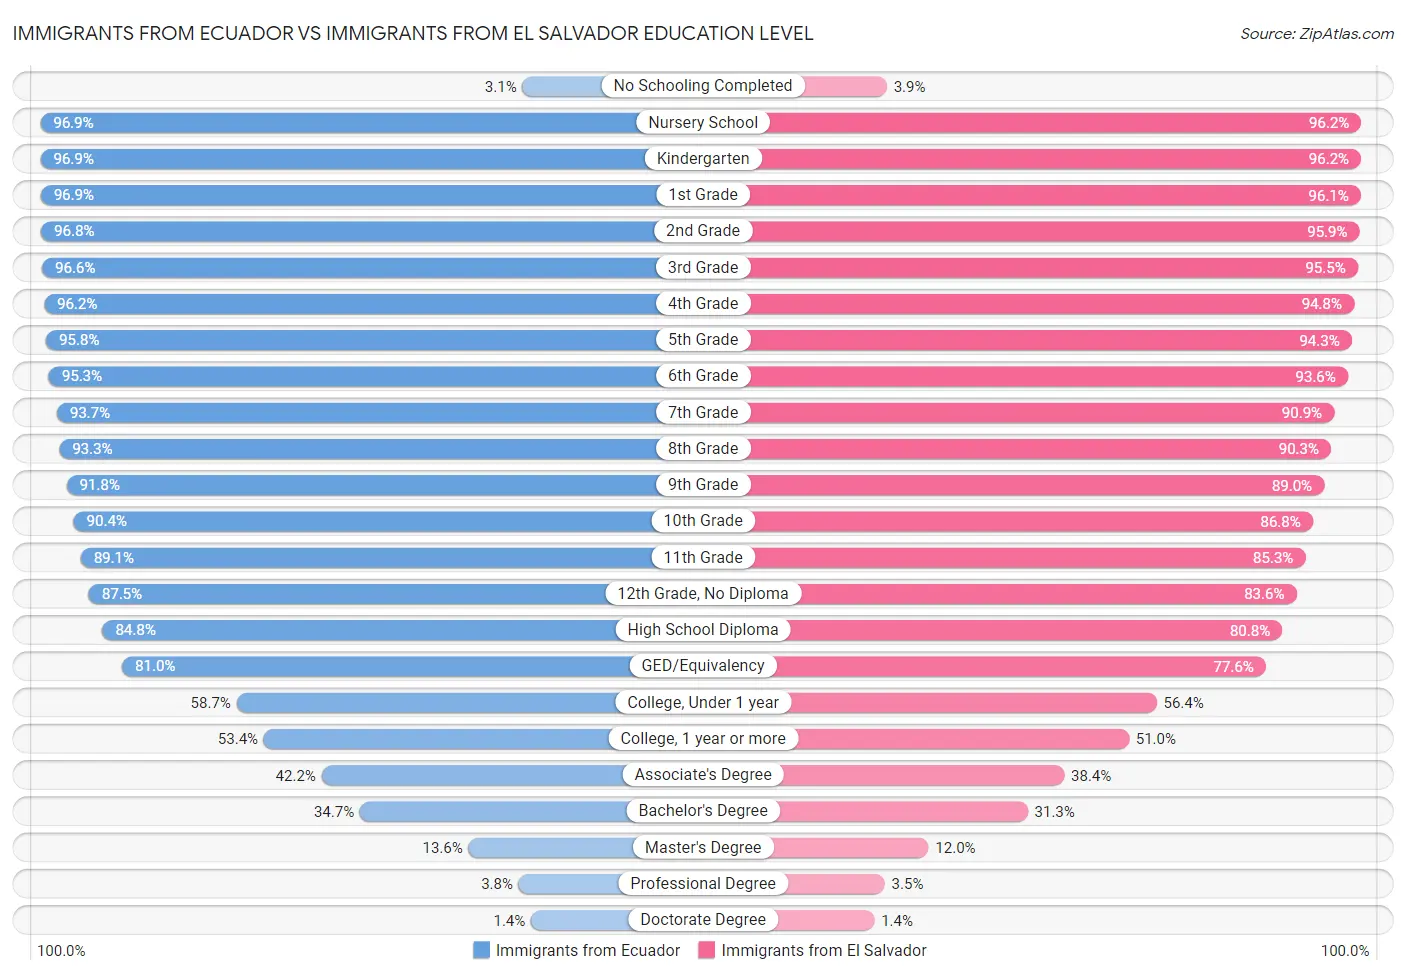 Immigrants from Ecuador vs Immigrants from El Salvador Education Level